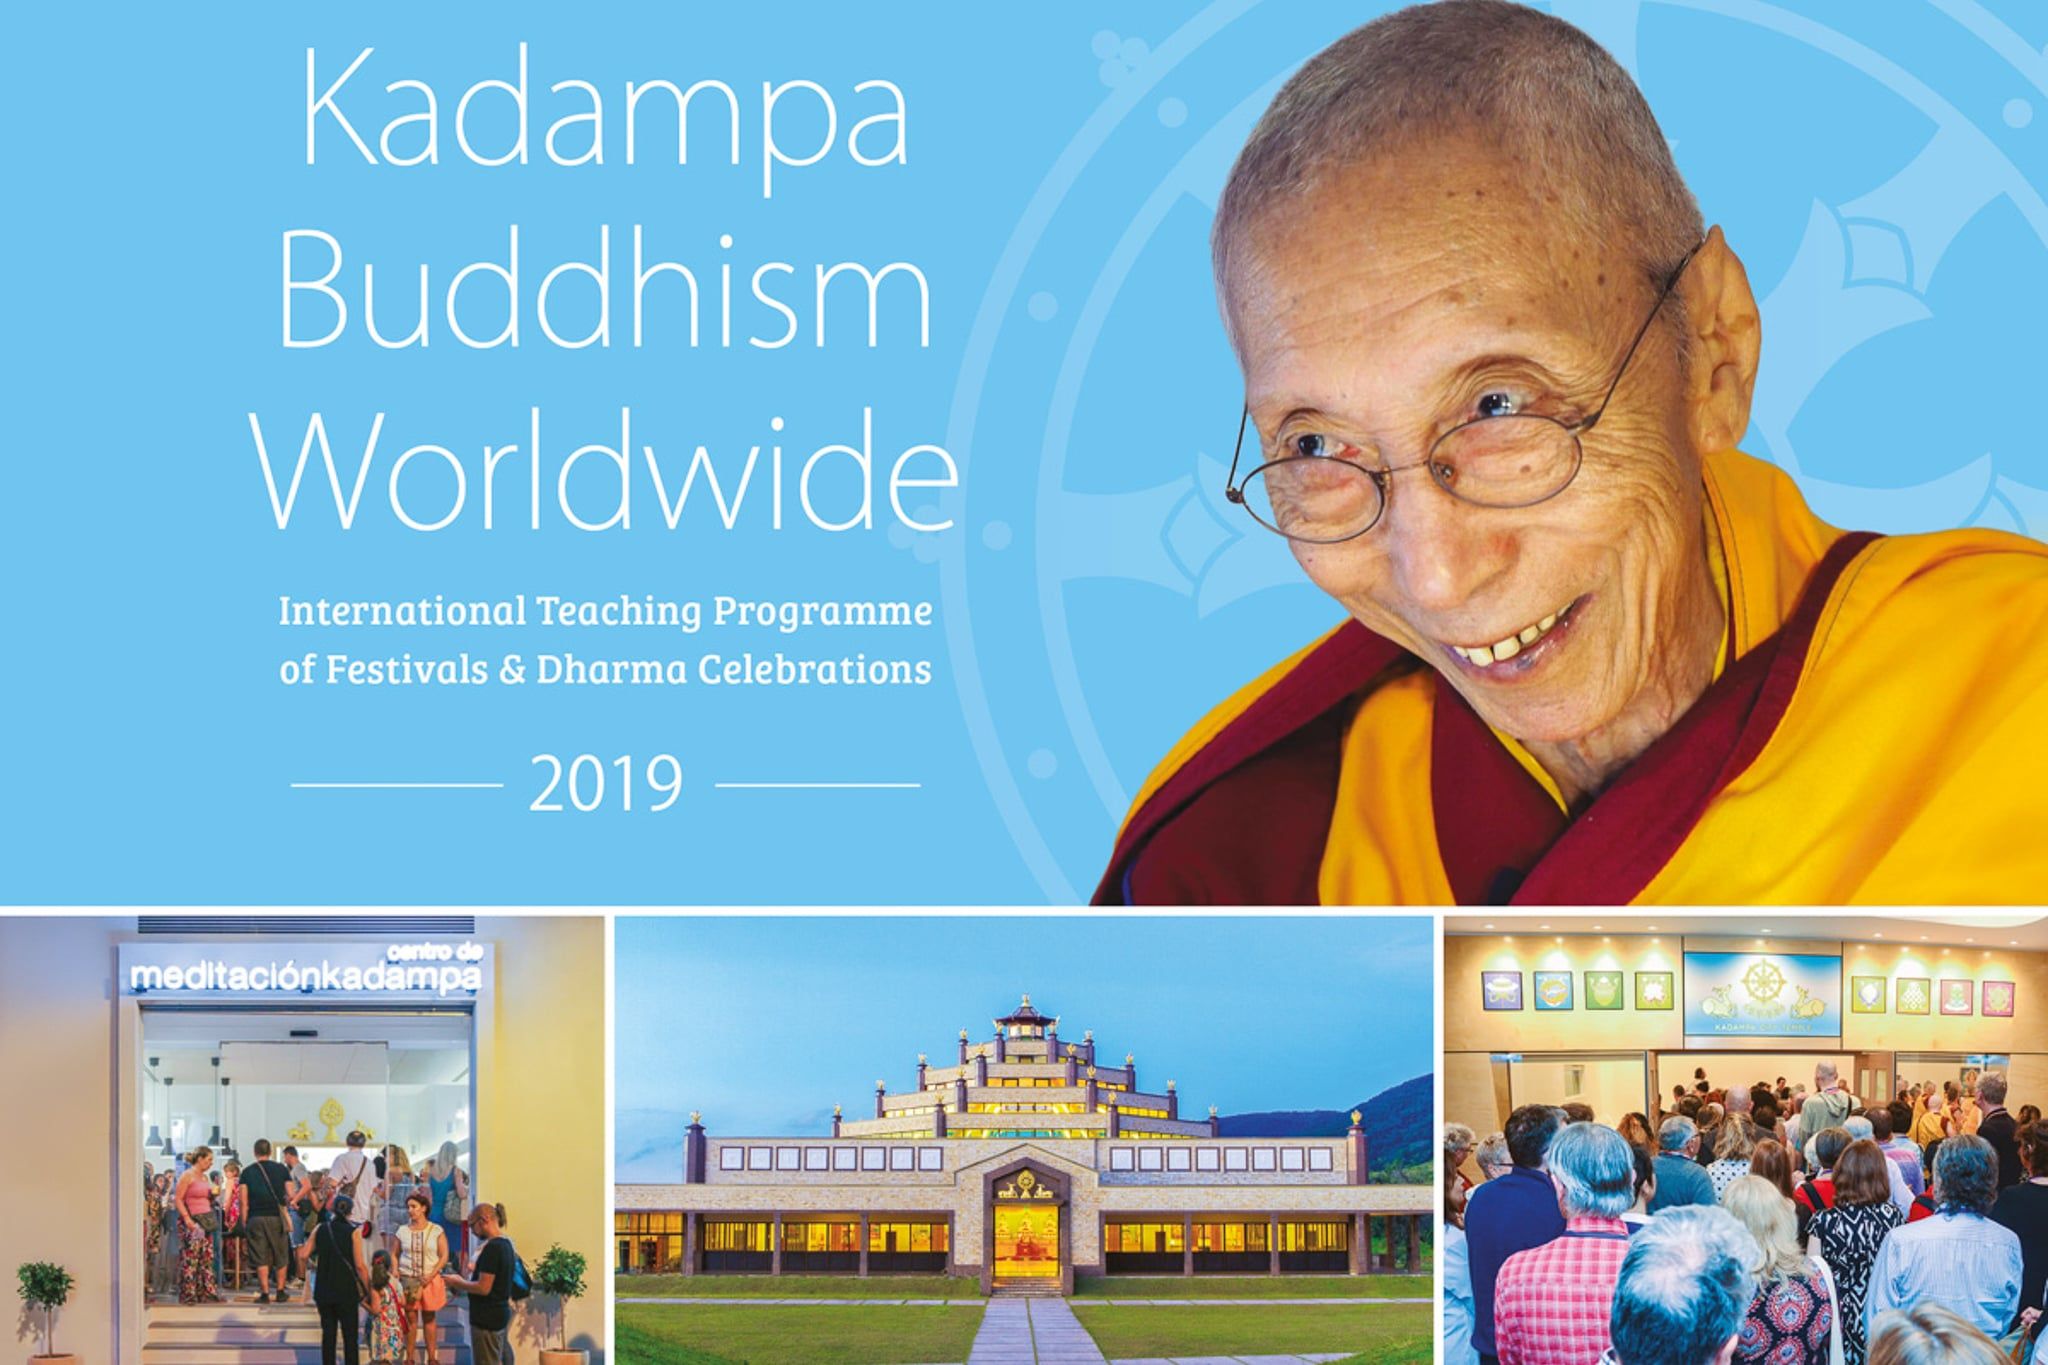 kadampa buddhism worldwide Kadampa Buddhism